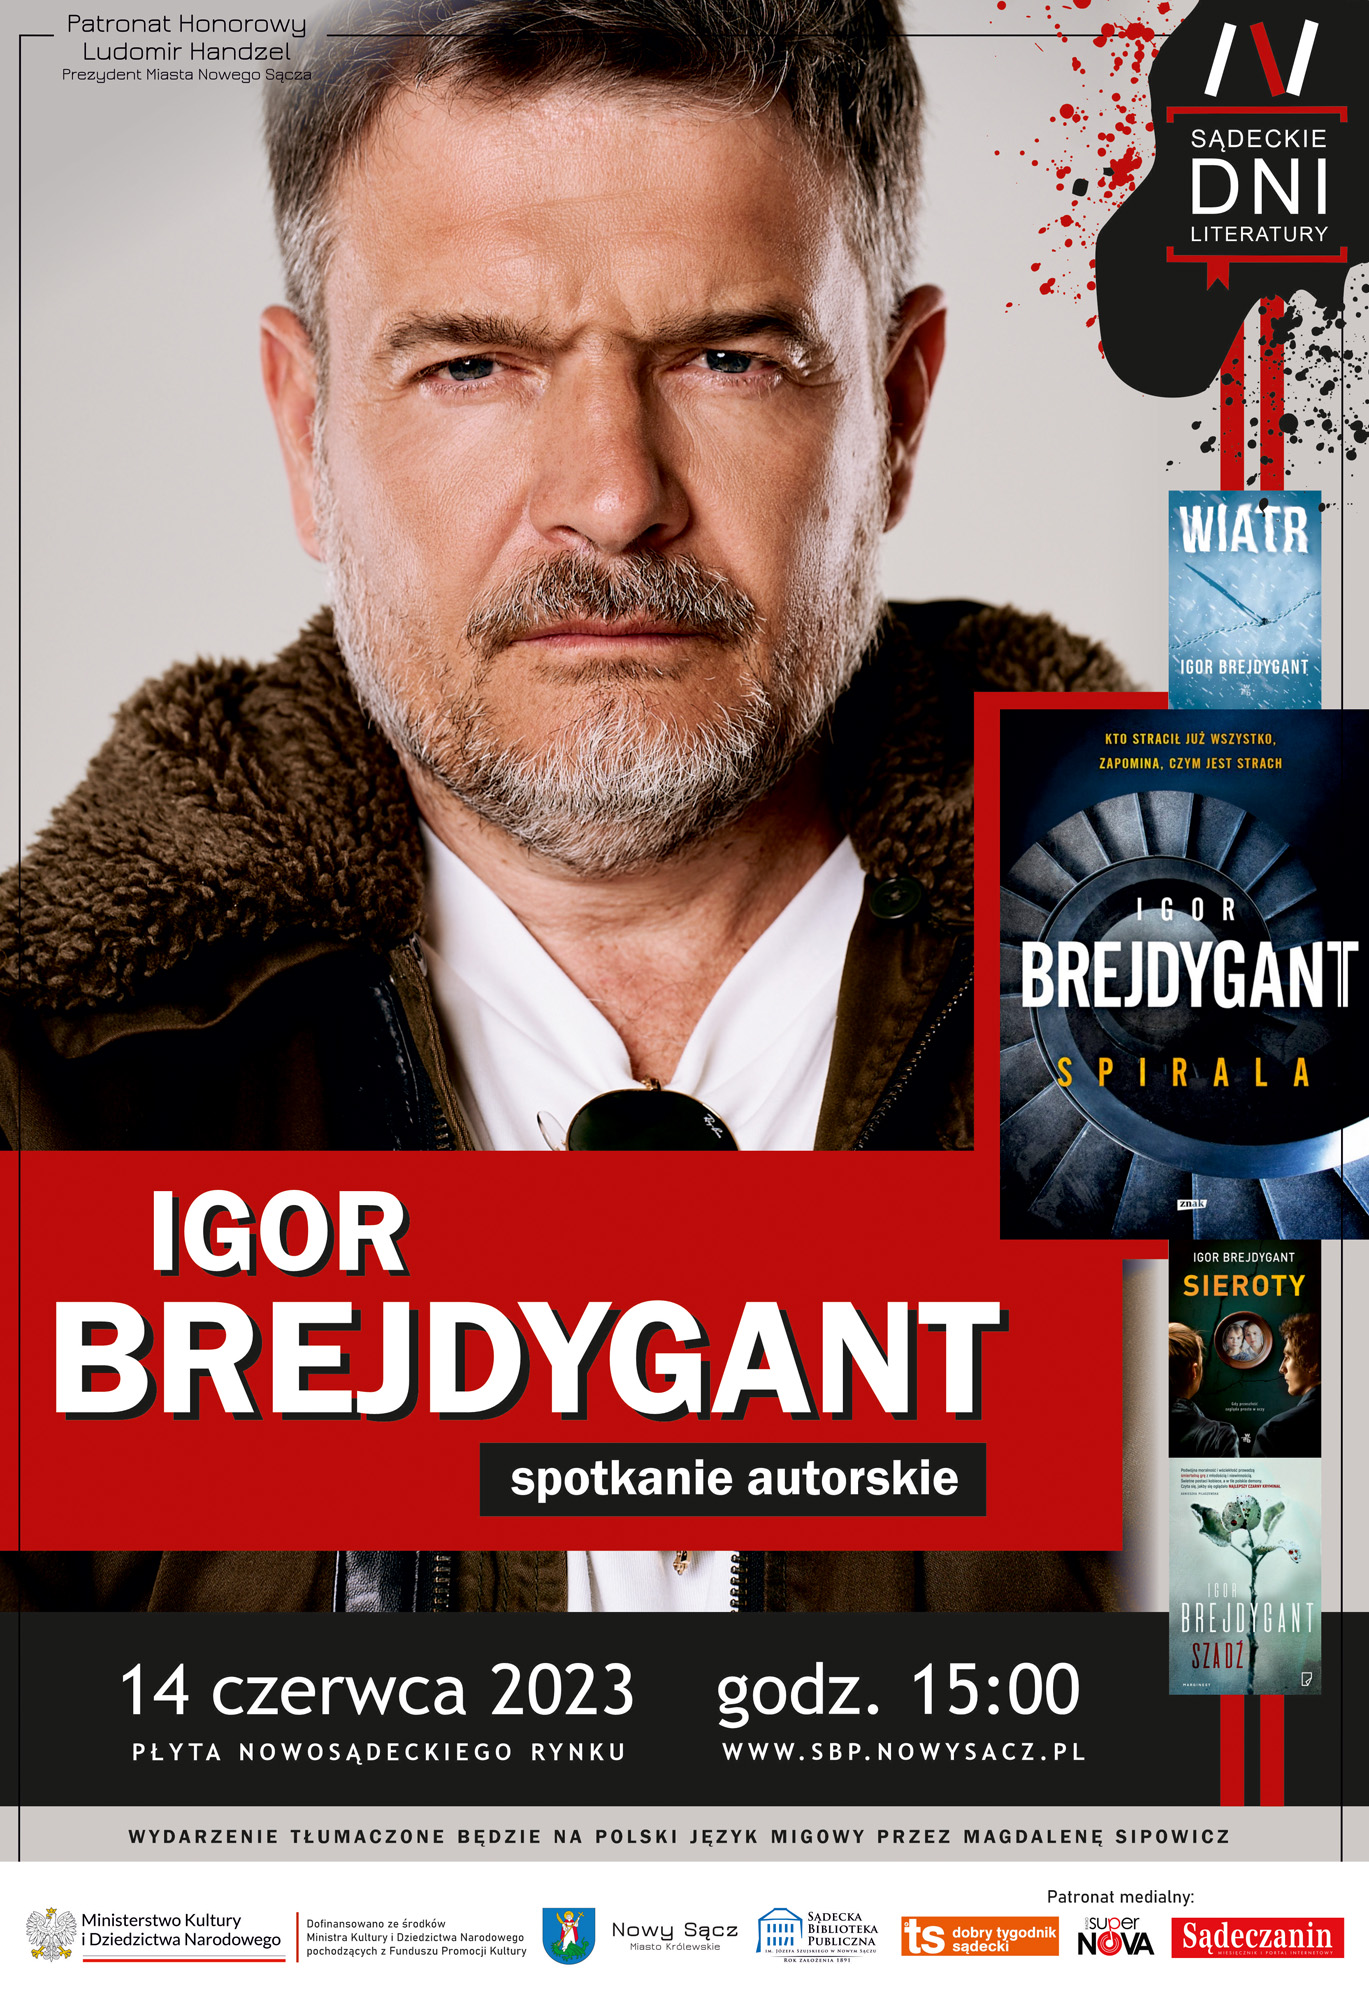 Portret mężczyzny z groźną mina i przymrużonymi oczami. Na dole na czerwonym tle duży napis "Igor Brejdygant". Obok, po prawej stronie, okładki książek.